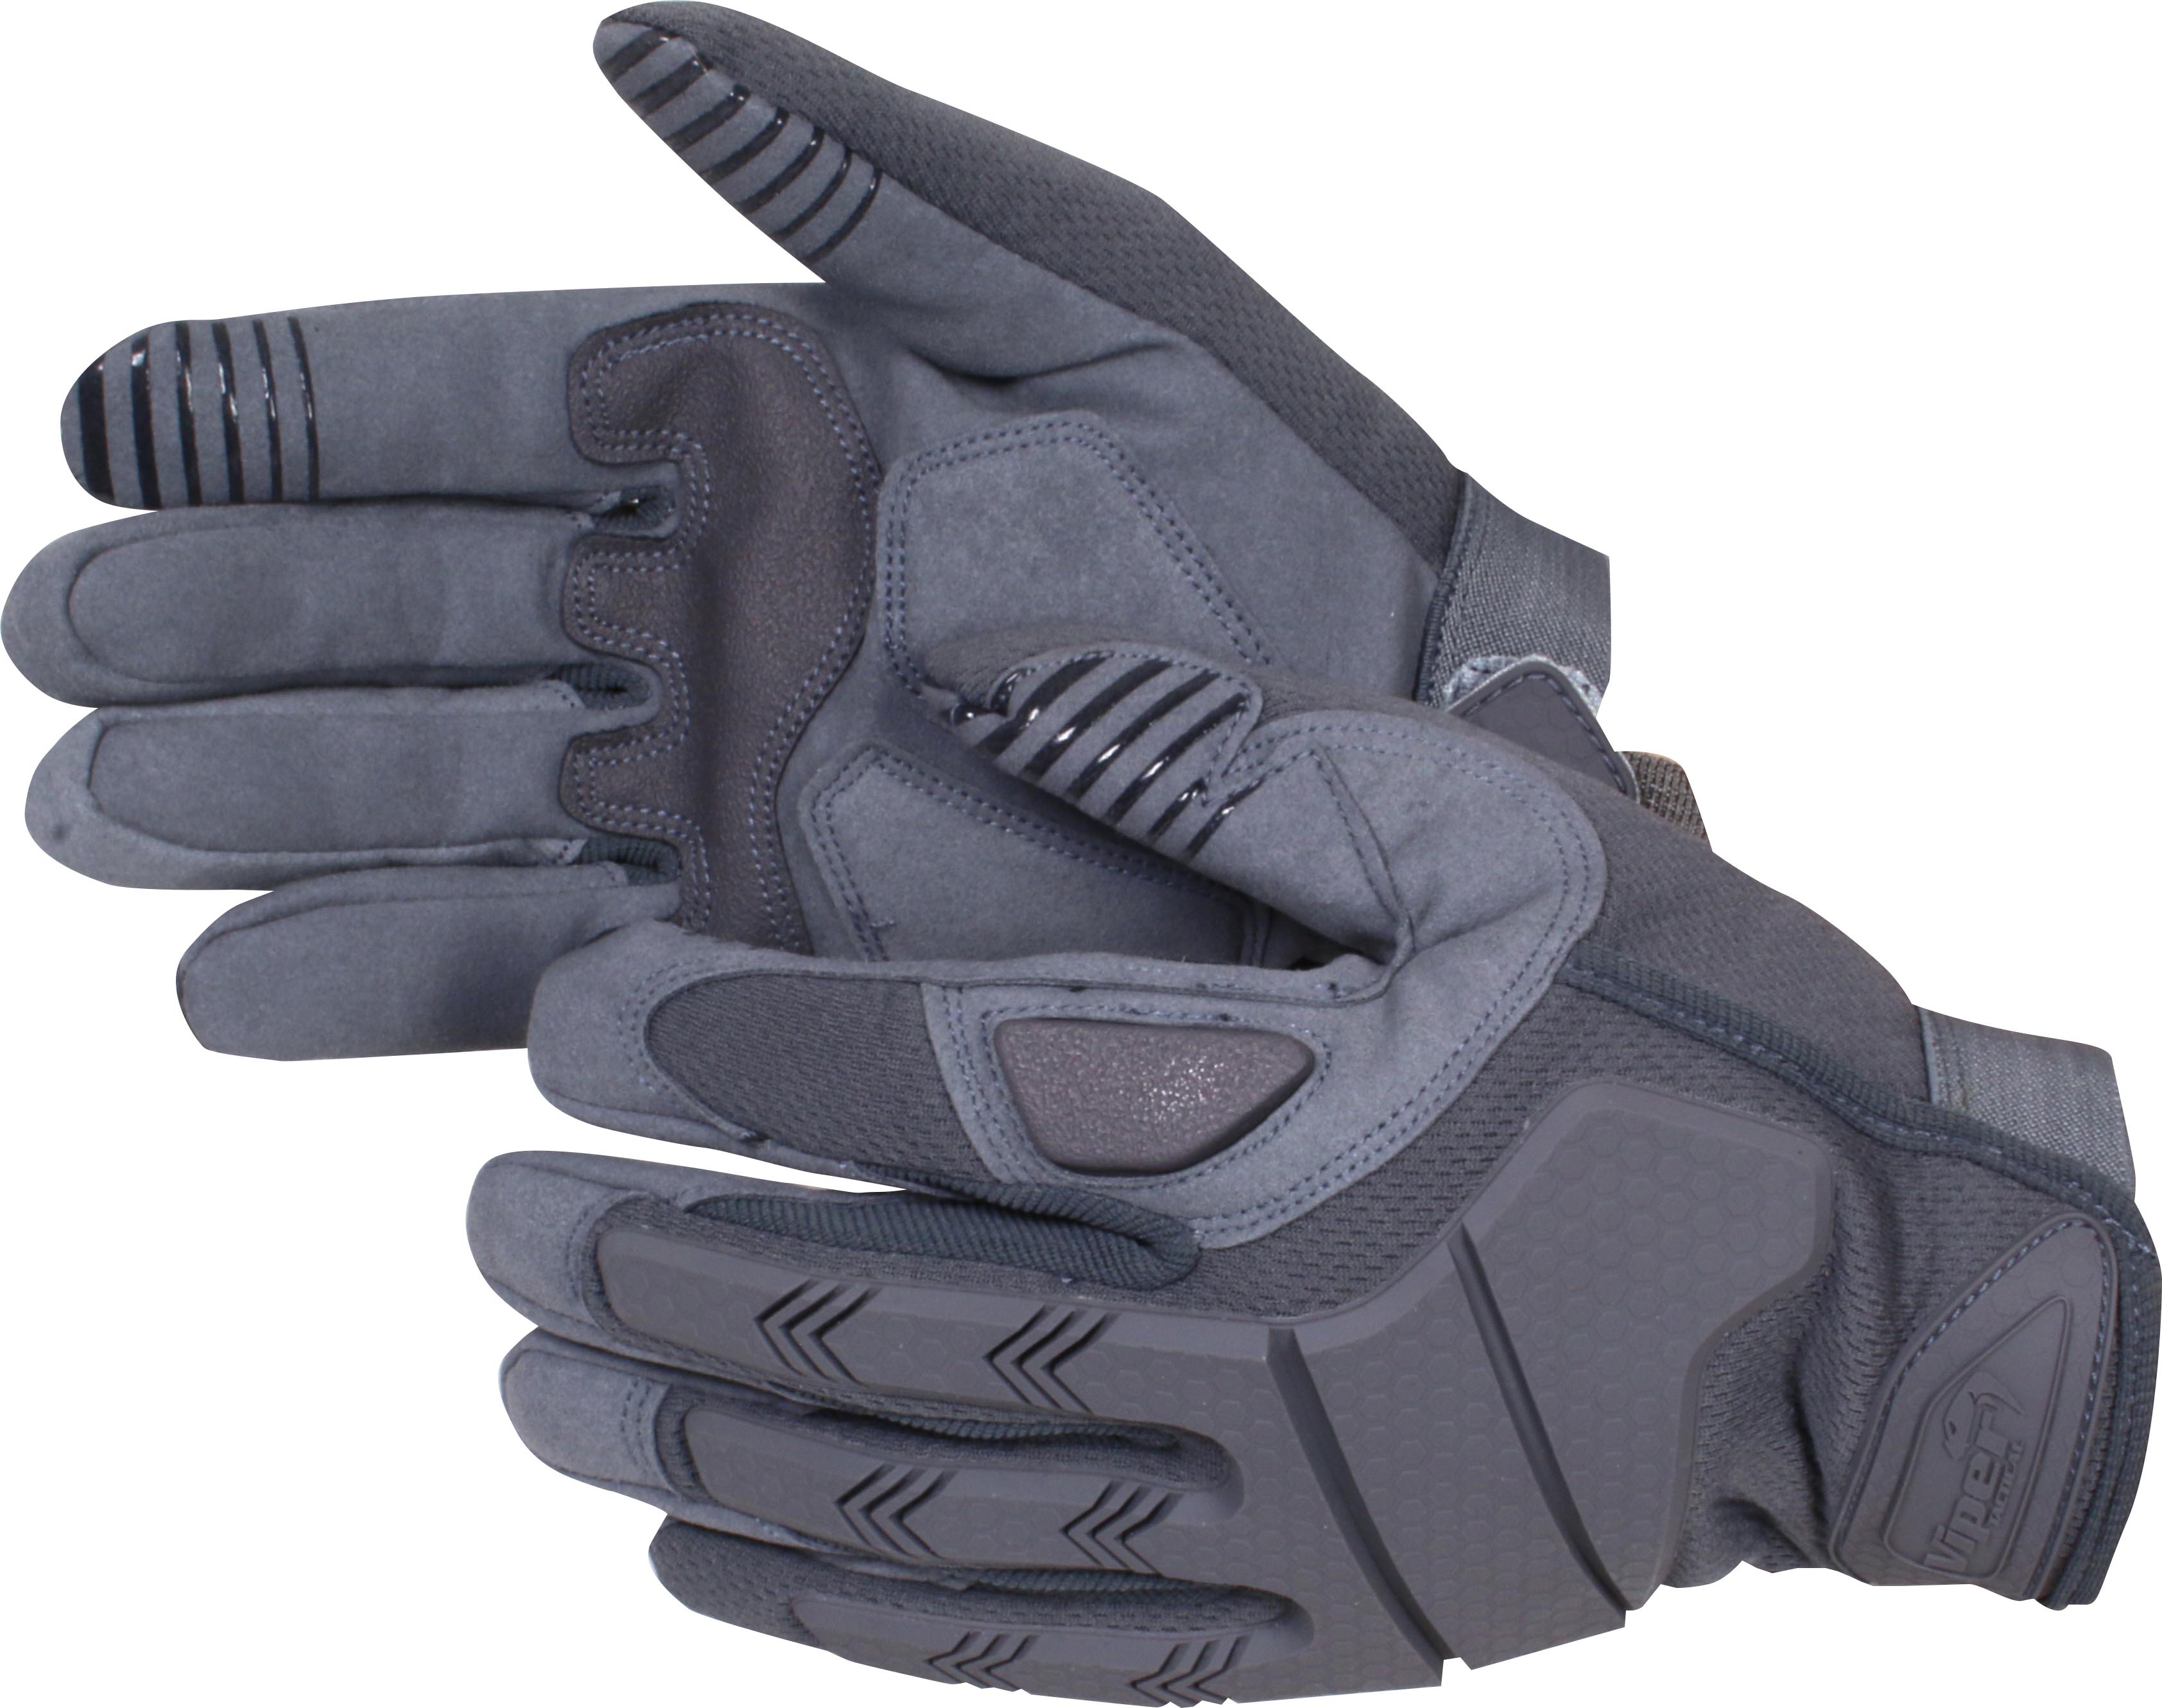 Viper Tactical Recon Gloves - Titanium